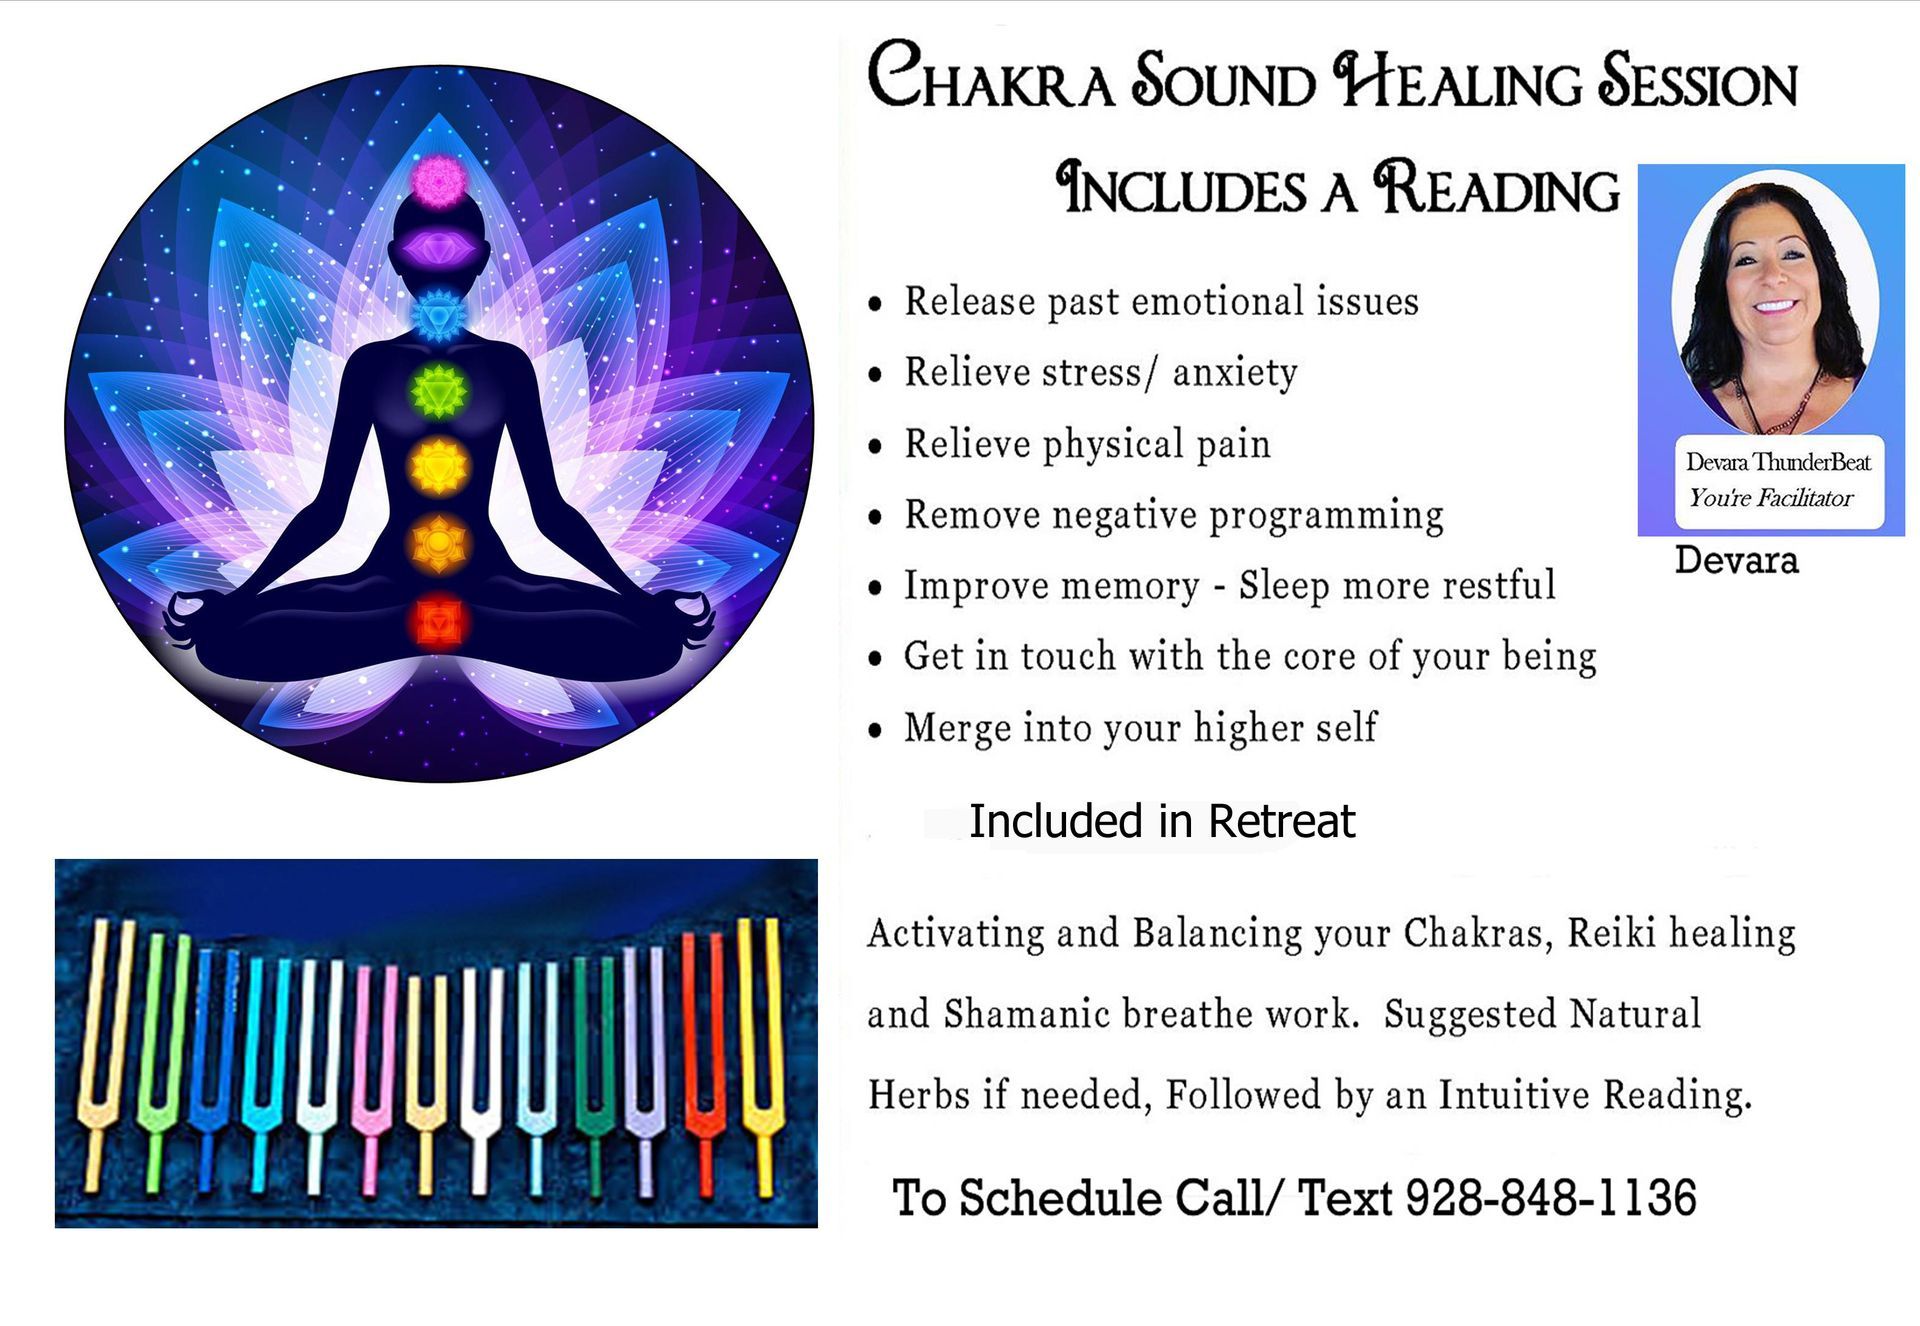 Chakra sound healing image